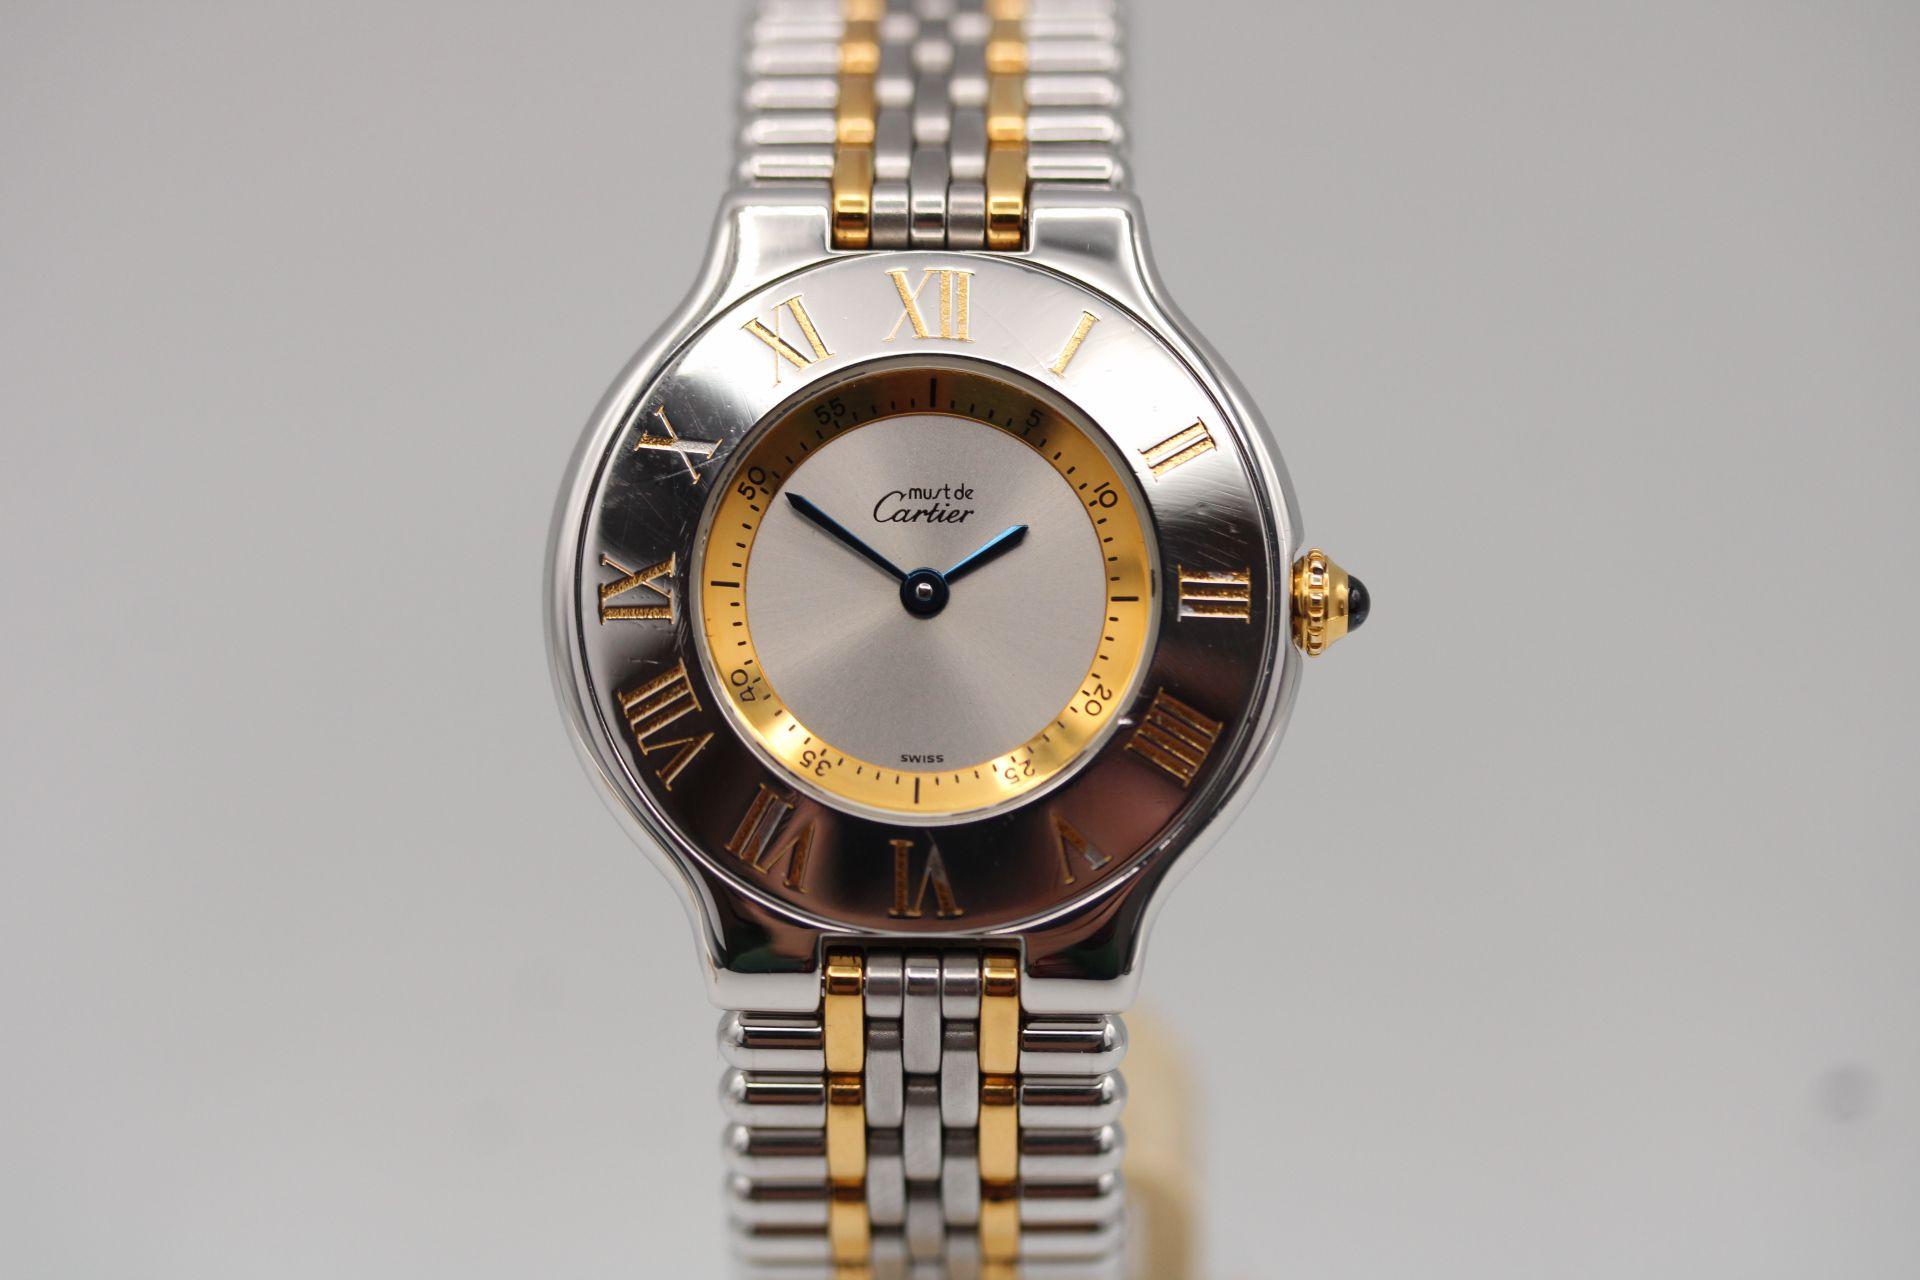 Montre : Cartier Must De 21
Numéro d'inventaire : CHW5409
Prix : £995.00

Une quantité impressionnante de montres pour moins de 1000 livres sterling ! C'est une Cartier classique qui ne coûte pas cher et qui a fière allure.

Boîtier en acier